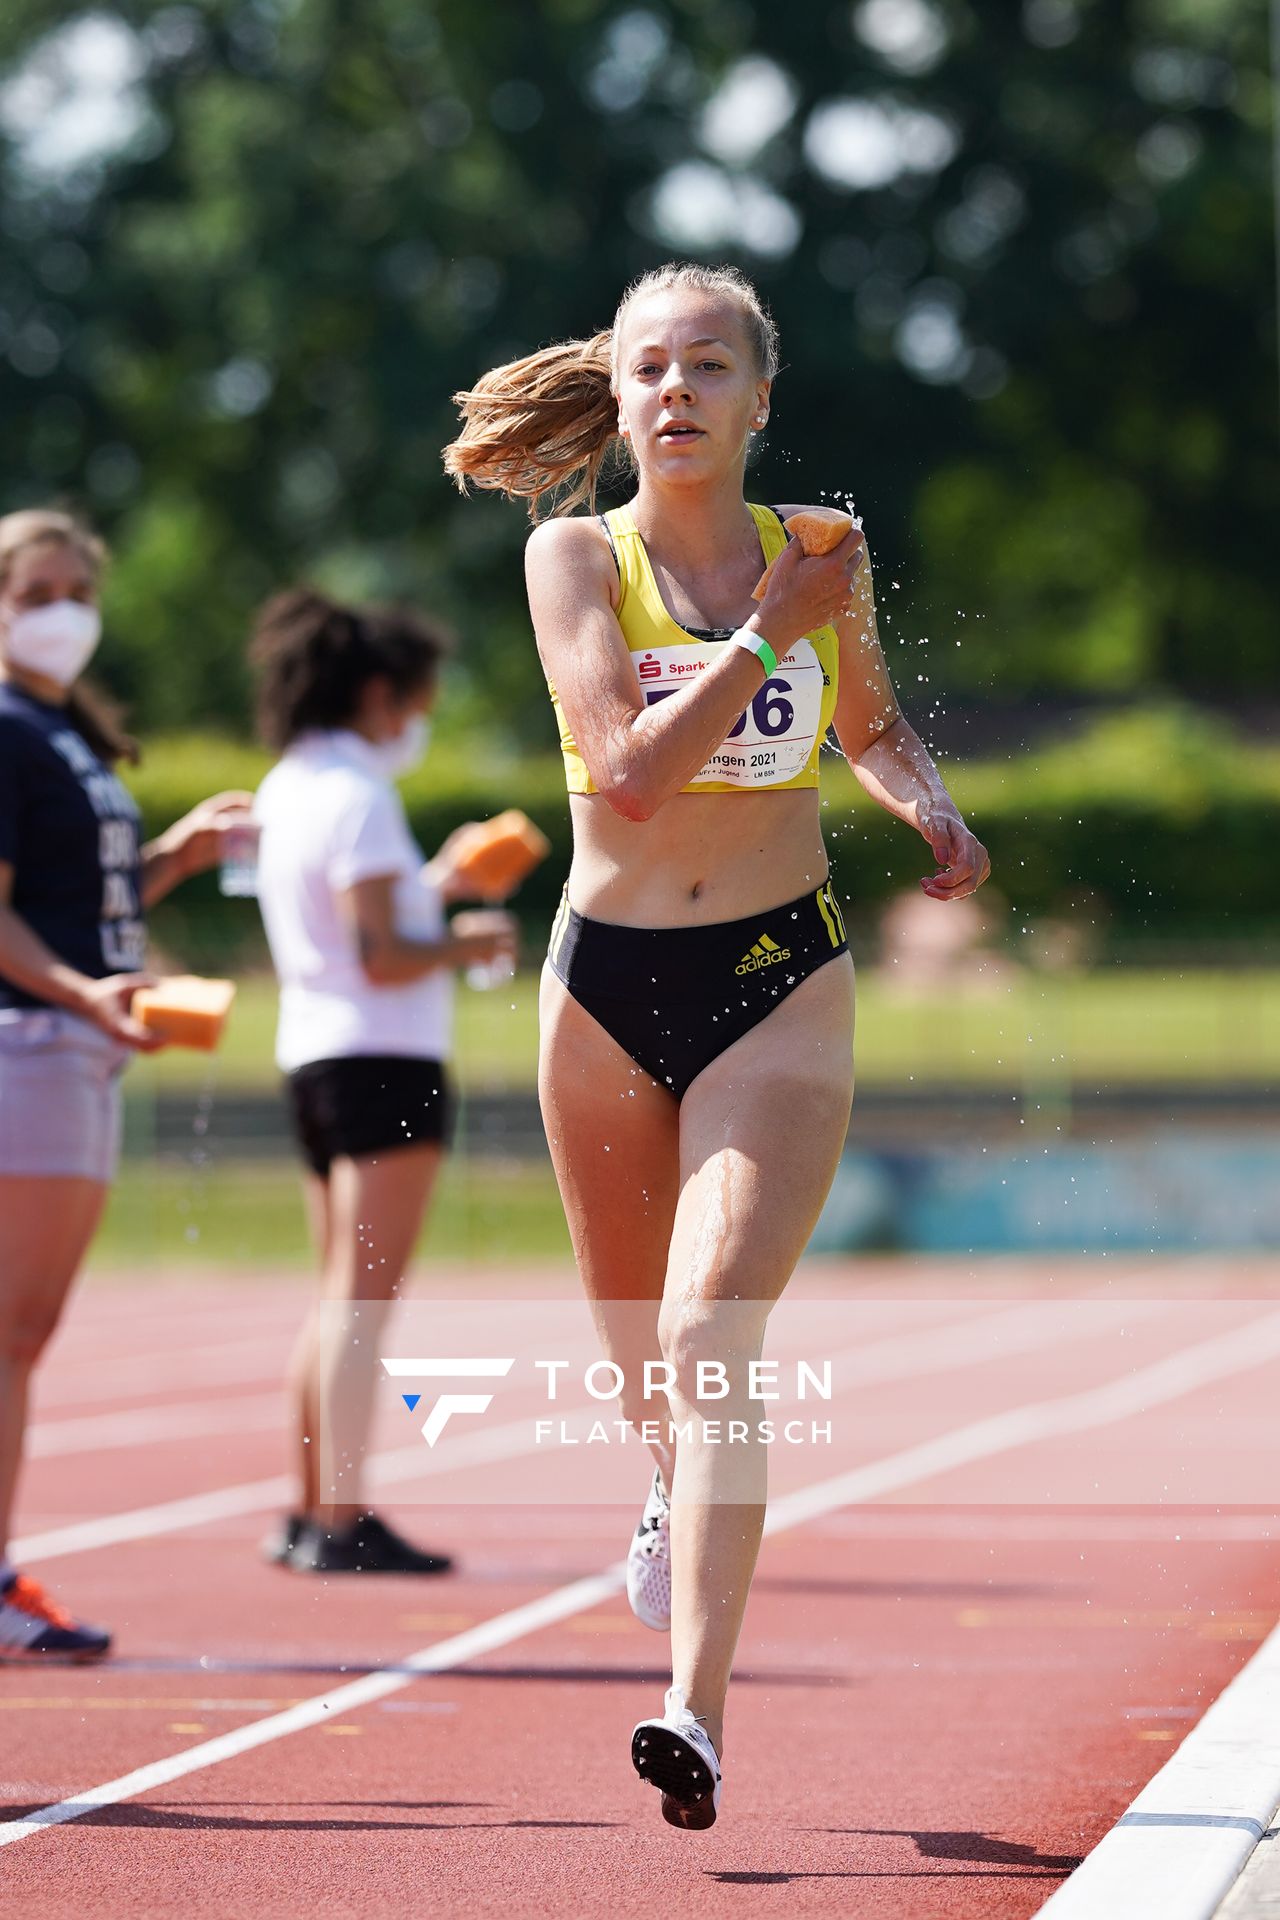 Sophie Hinrichs (VfL Loeningen) ueber 3000m am 19.06.2021 waehrend den NLV + BLV Landesmeisterschaften im Jahnstadion in Göttingen